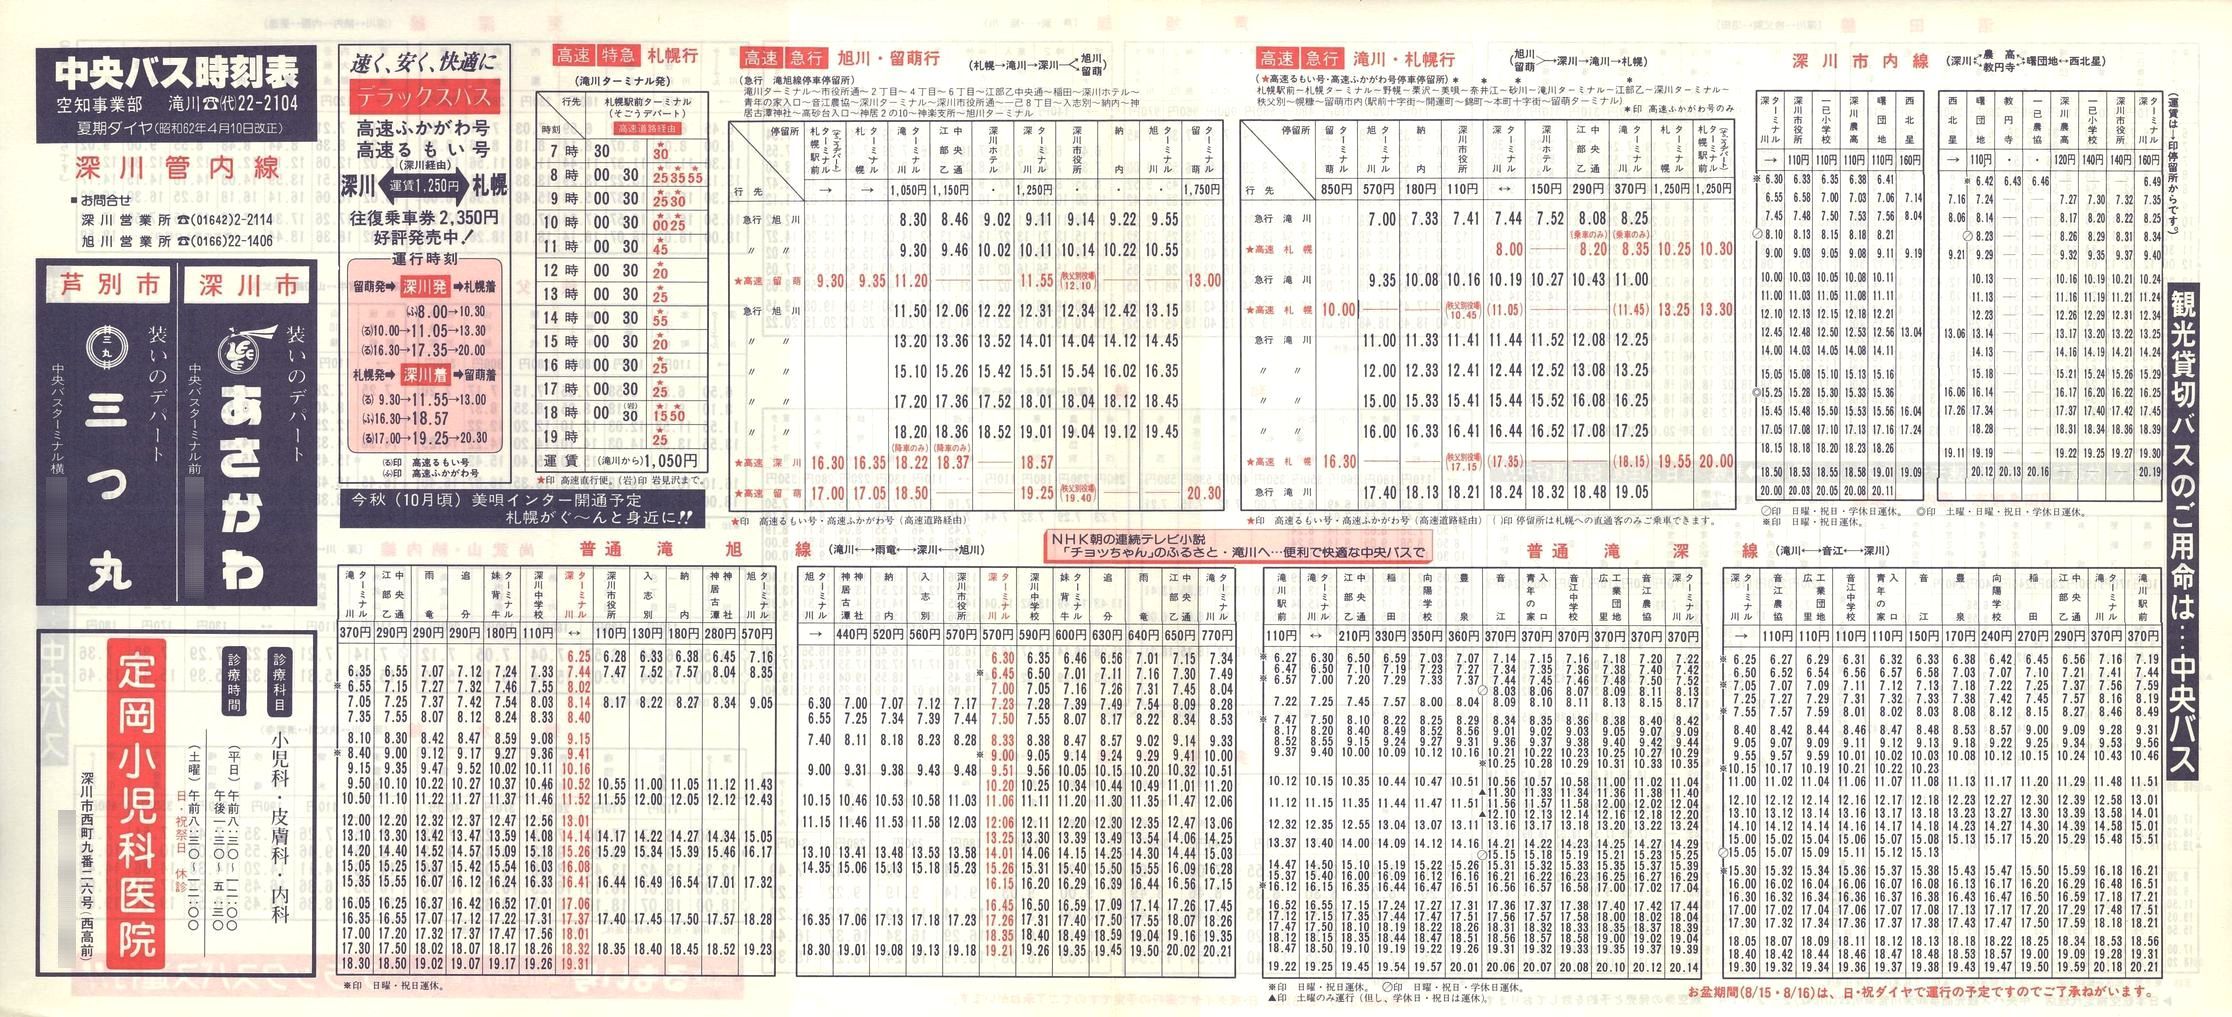 1987-04-10改正_北海道中央バス(空知)_深川管内線時刻表表面